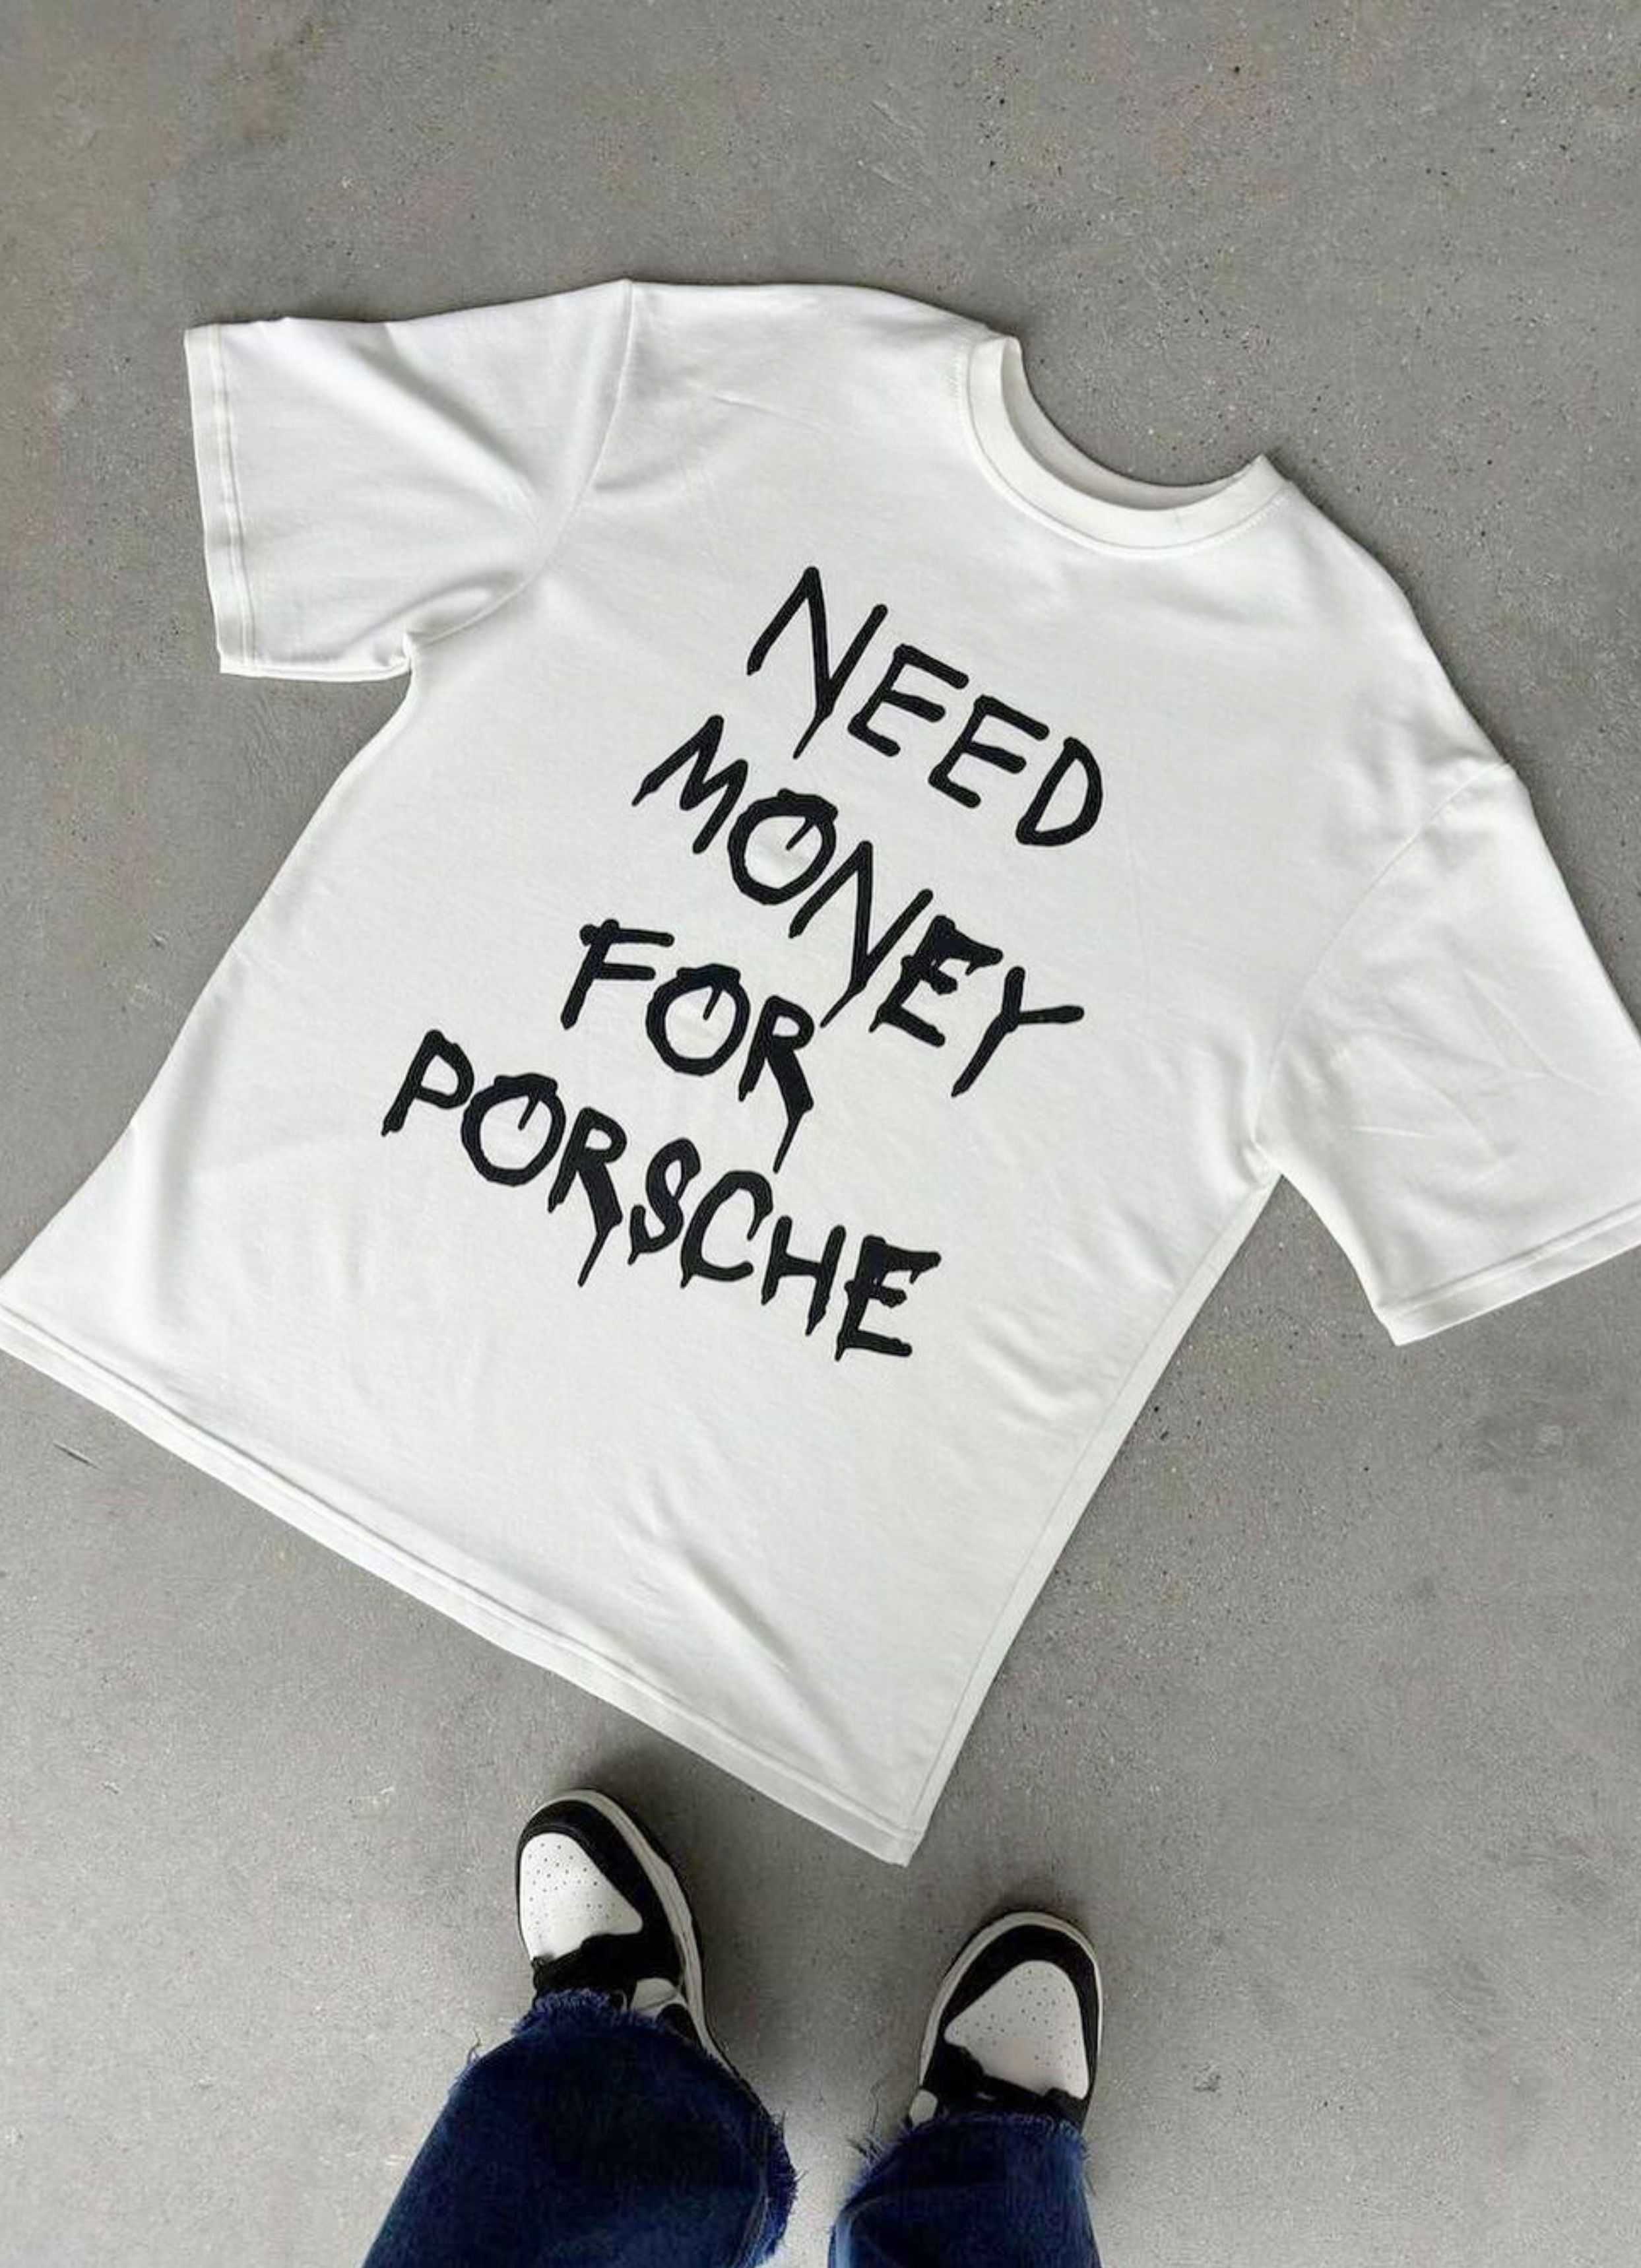 Need Money For Porsche White Back Oversized T-Shirt